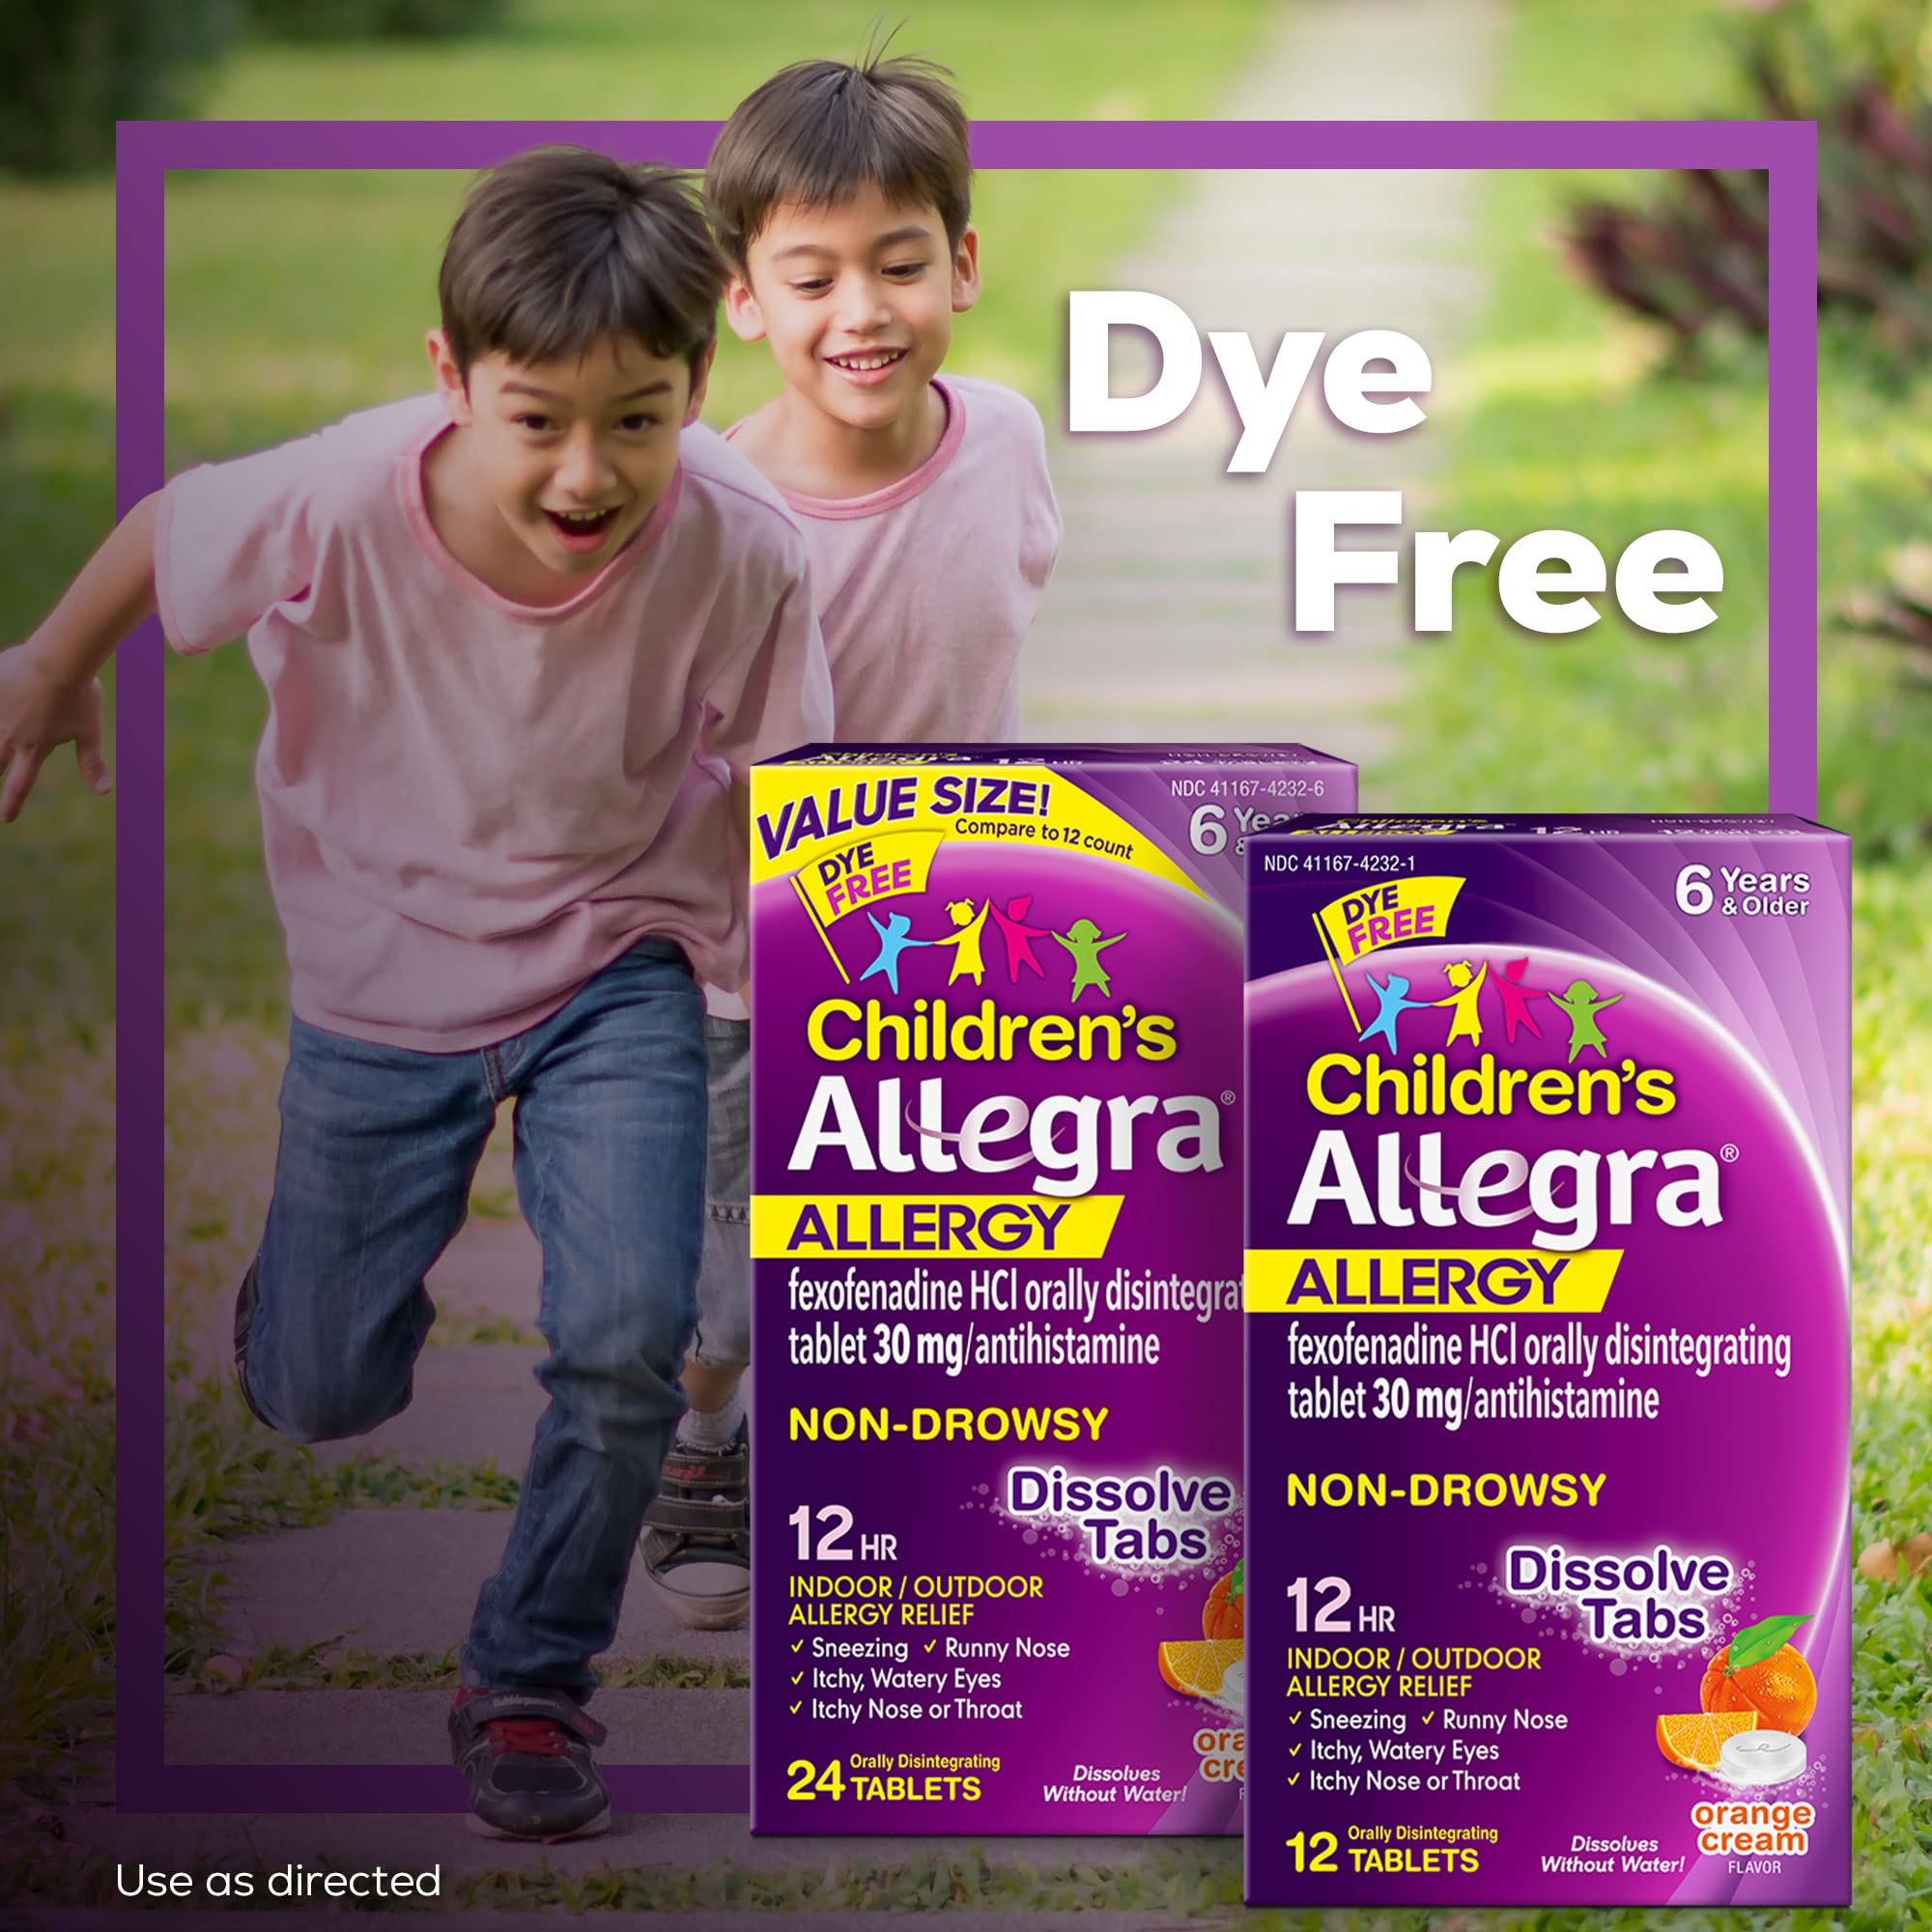 Allegra Children's 12HR Orange Cream Tablets, 24 Count, Non-Drowsy Antihistamine for Kids